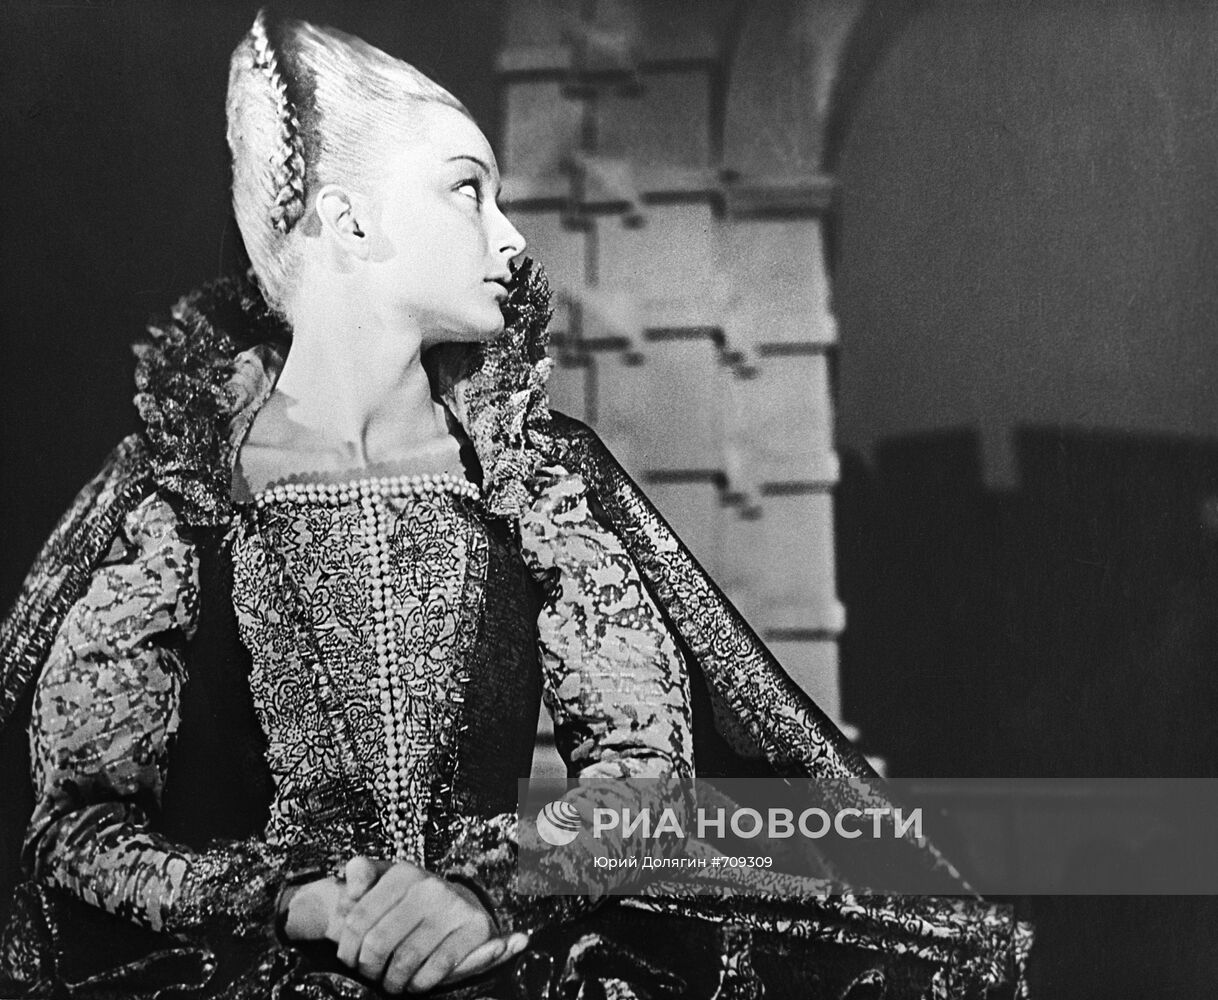 Кадр из фильма "Гамлет" Григория Козинцева